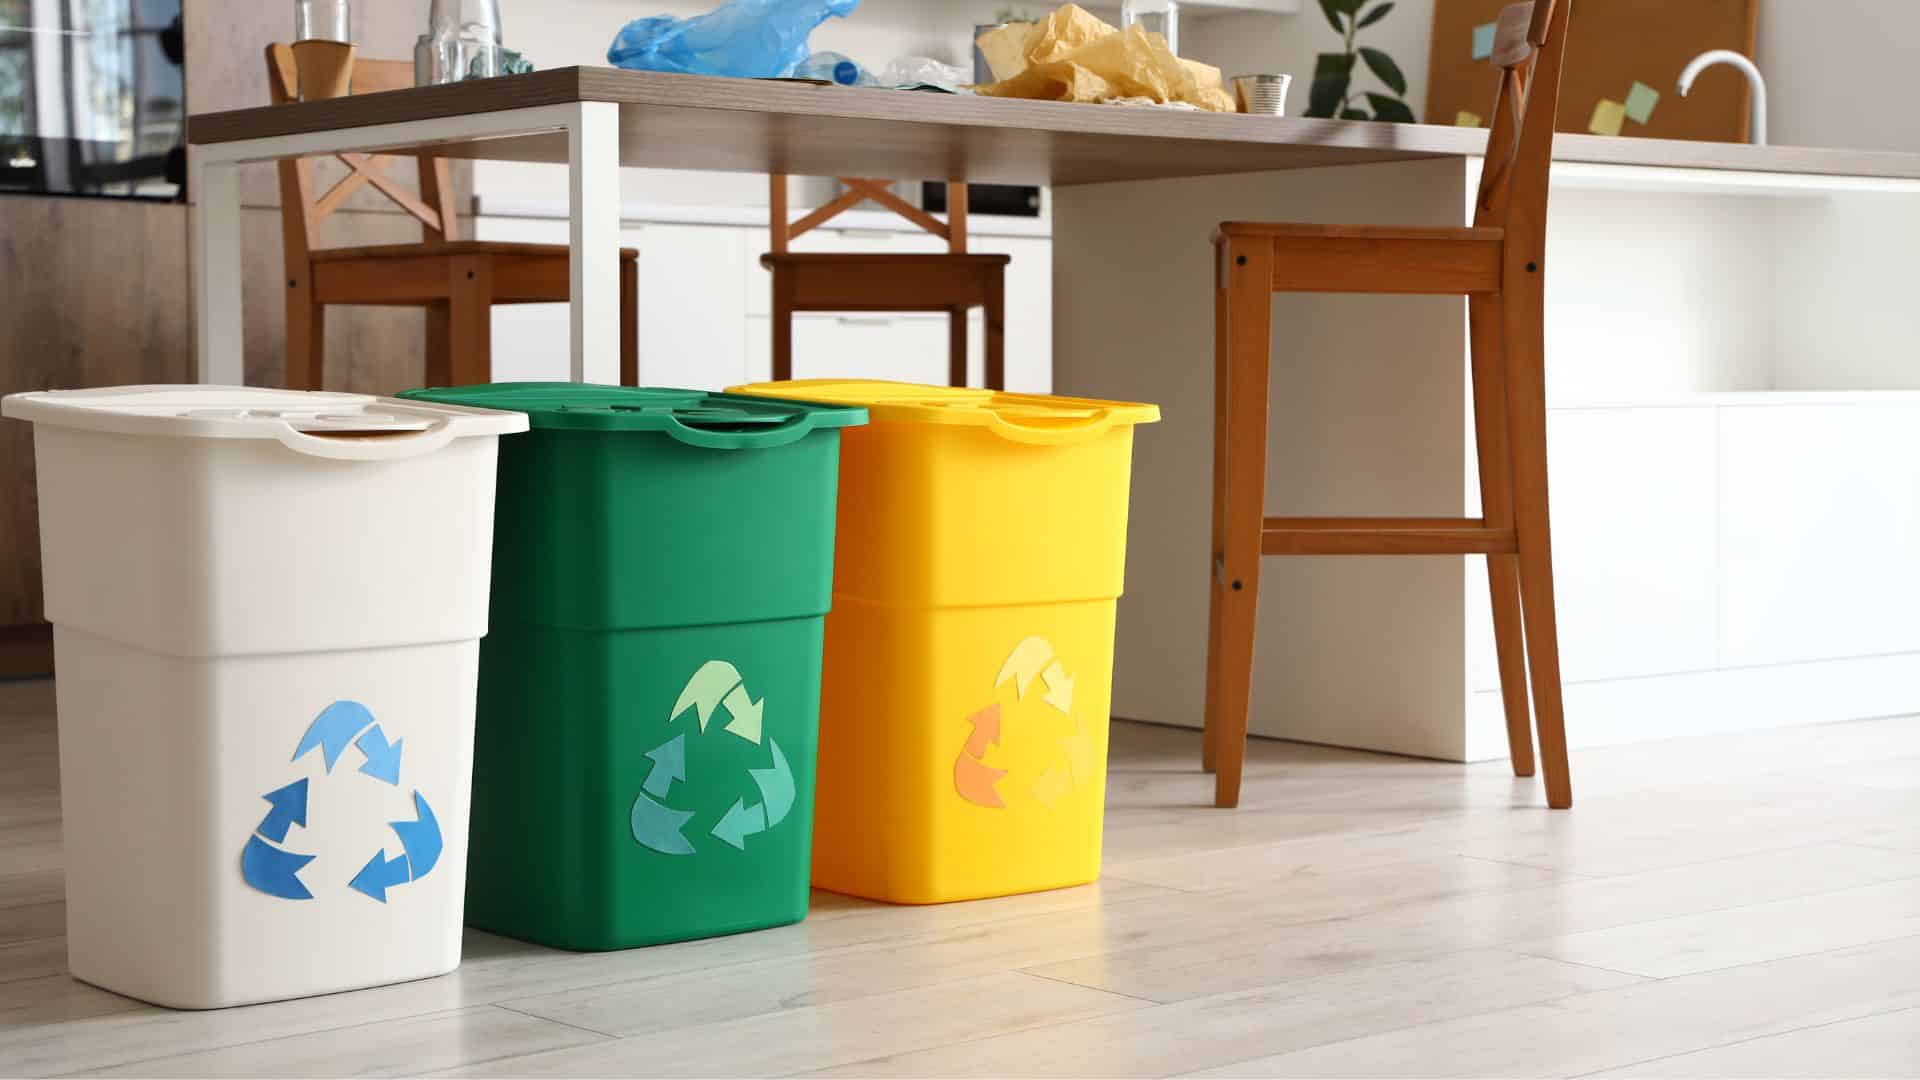 Colorado Pure - environmentally sustainable break room in Colorado Springs - recycling bins